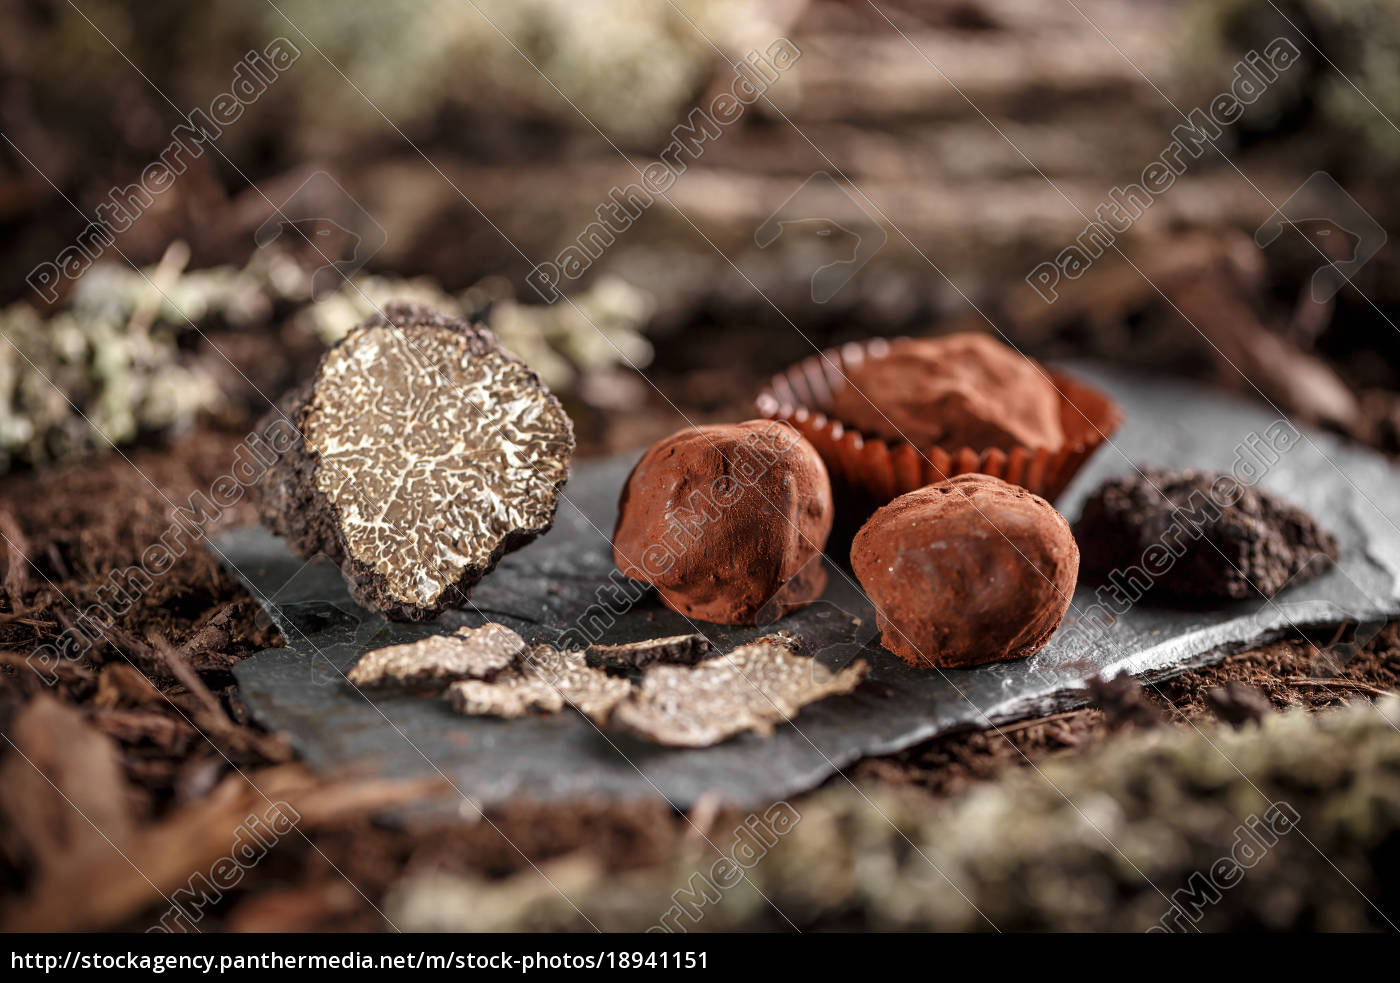 gourmet chocolate truffles